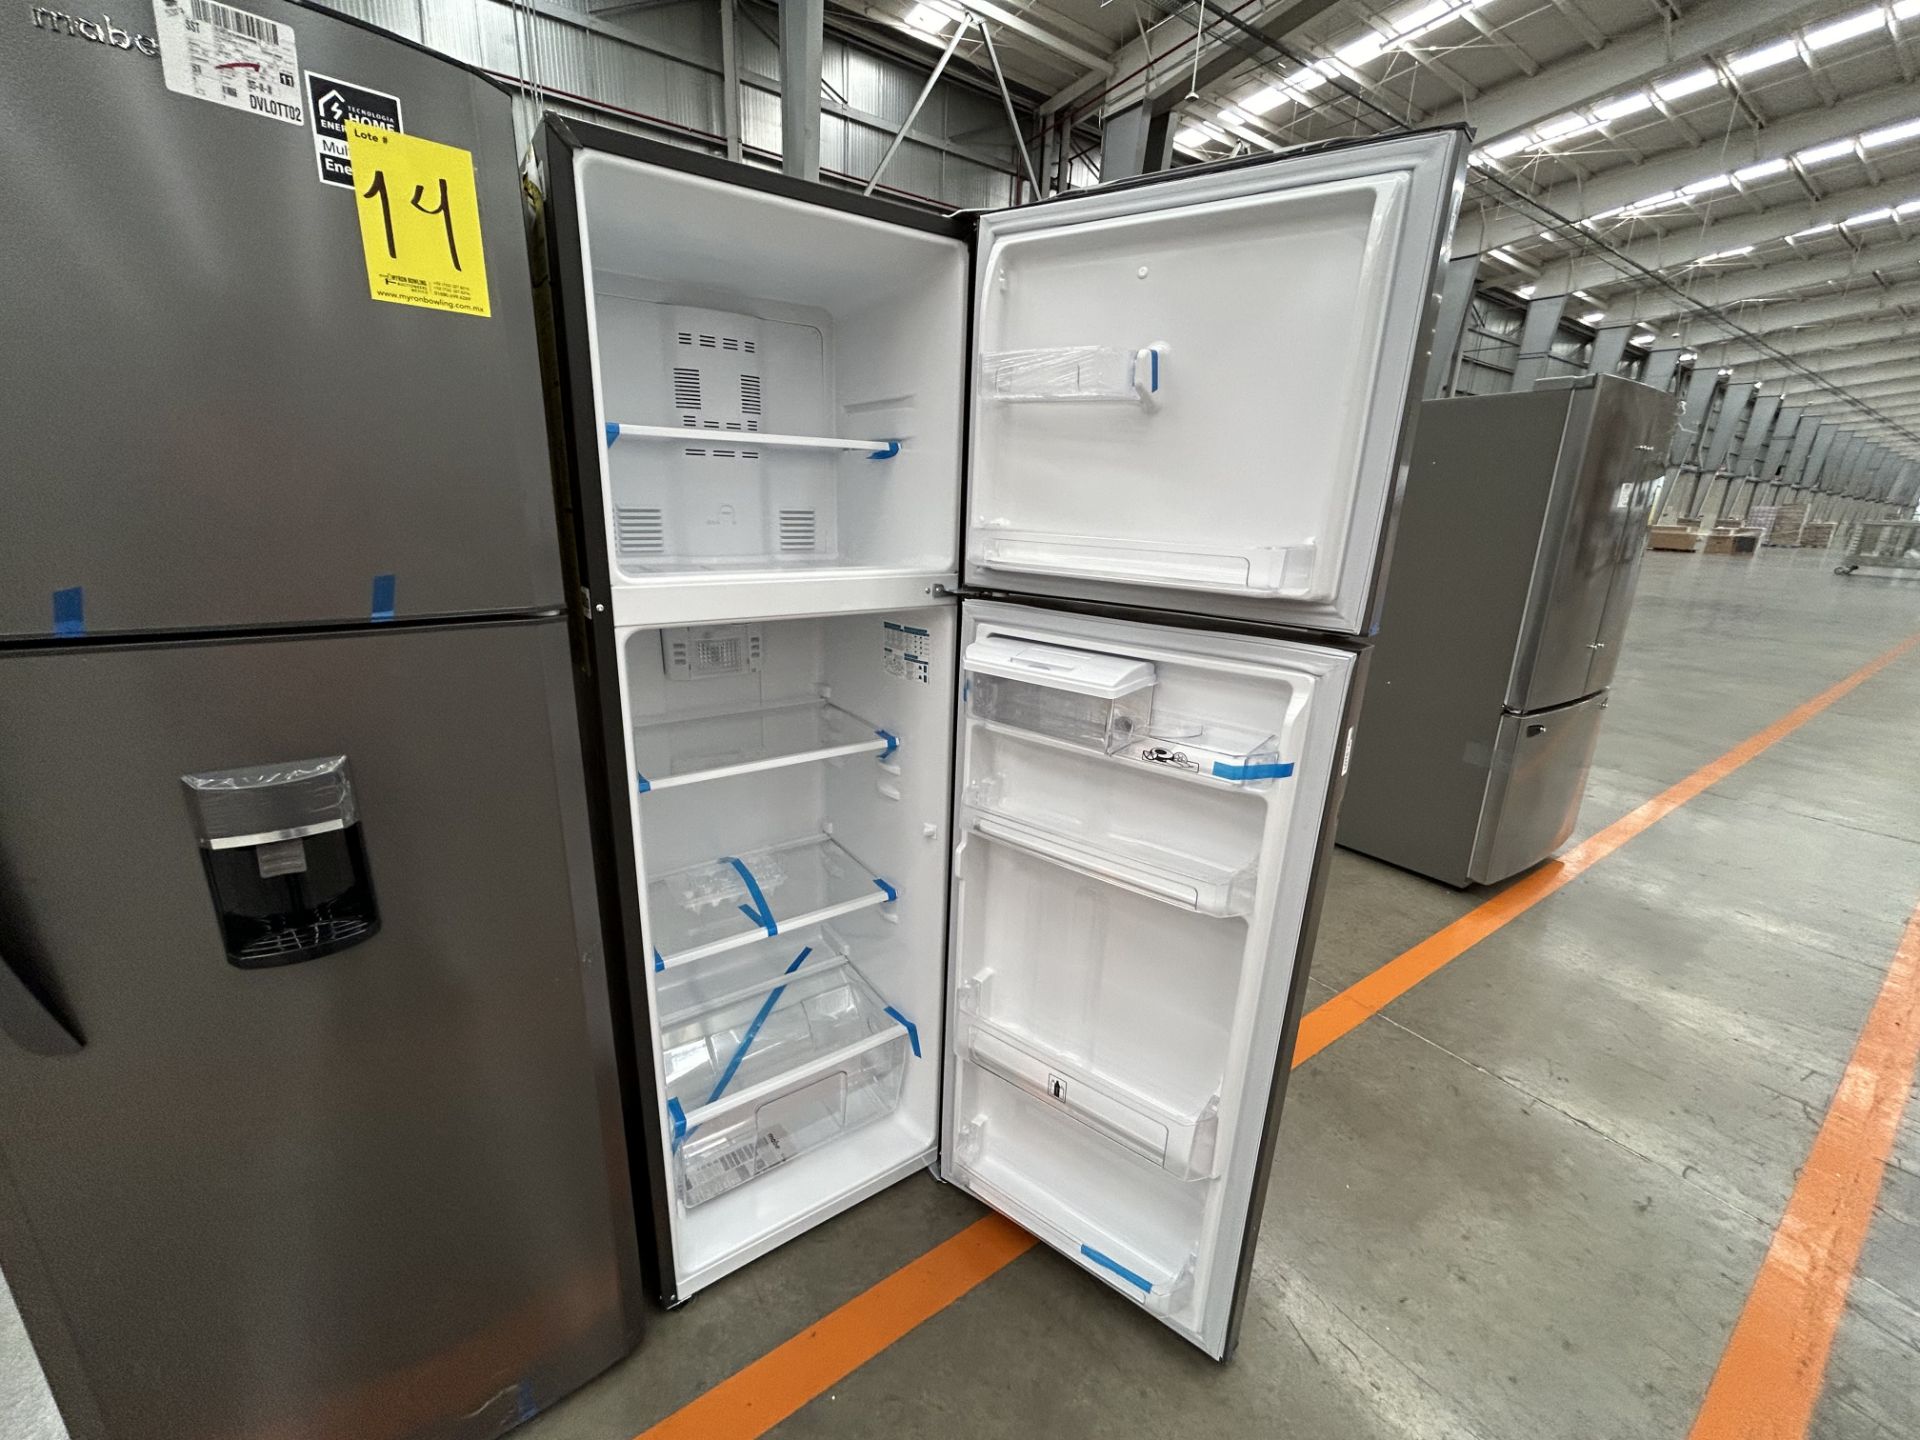 Lote de 2 refrigeradores contiene: 1 refrigerador con dispensador de agua Marca MABE, Modelo RMA300 - Image 4 of 6